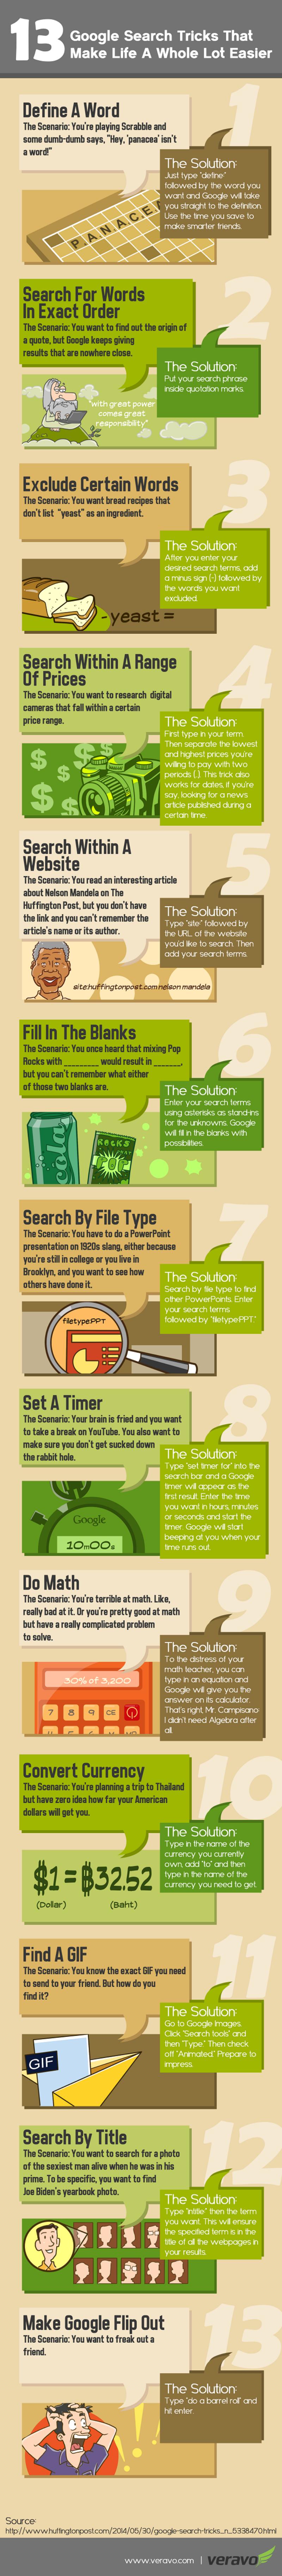 Infografía con 13 tips para facilitar tus búsquedas en Google